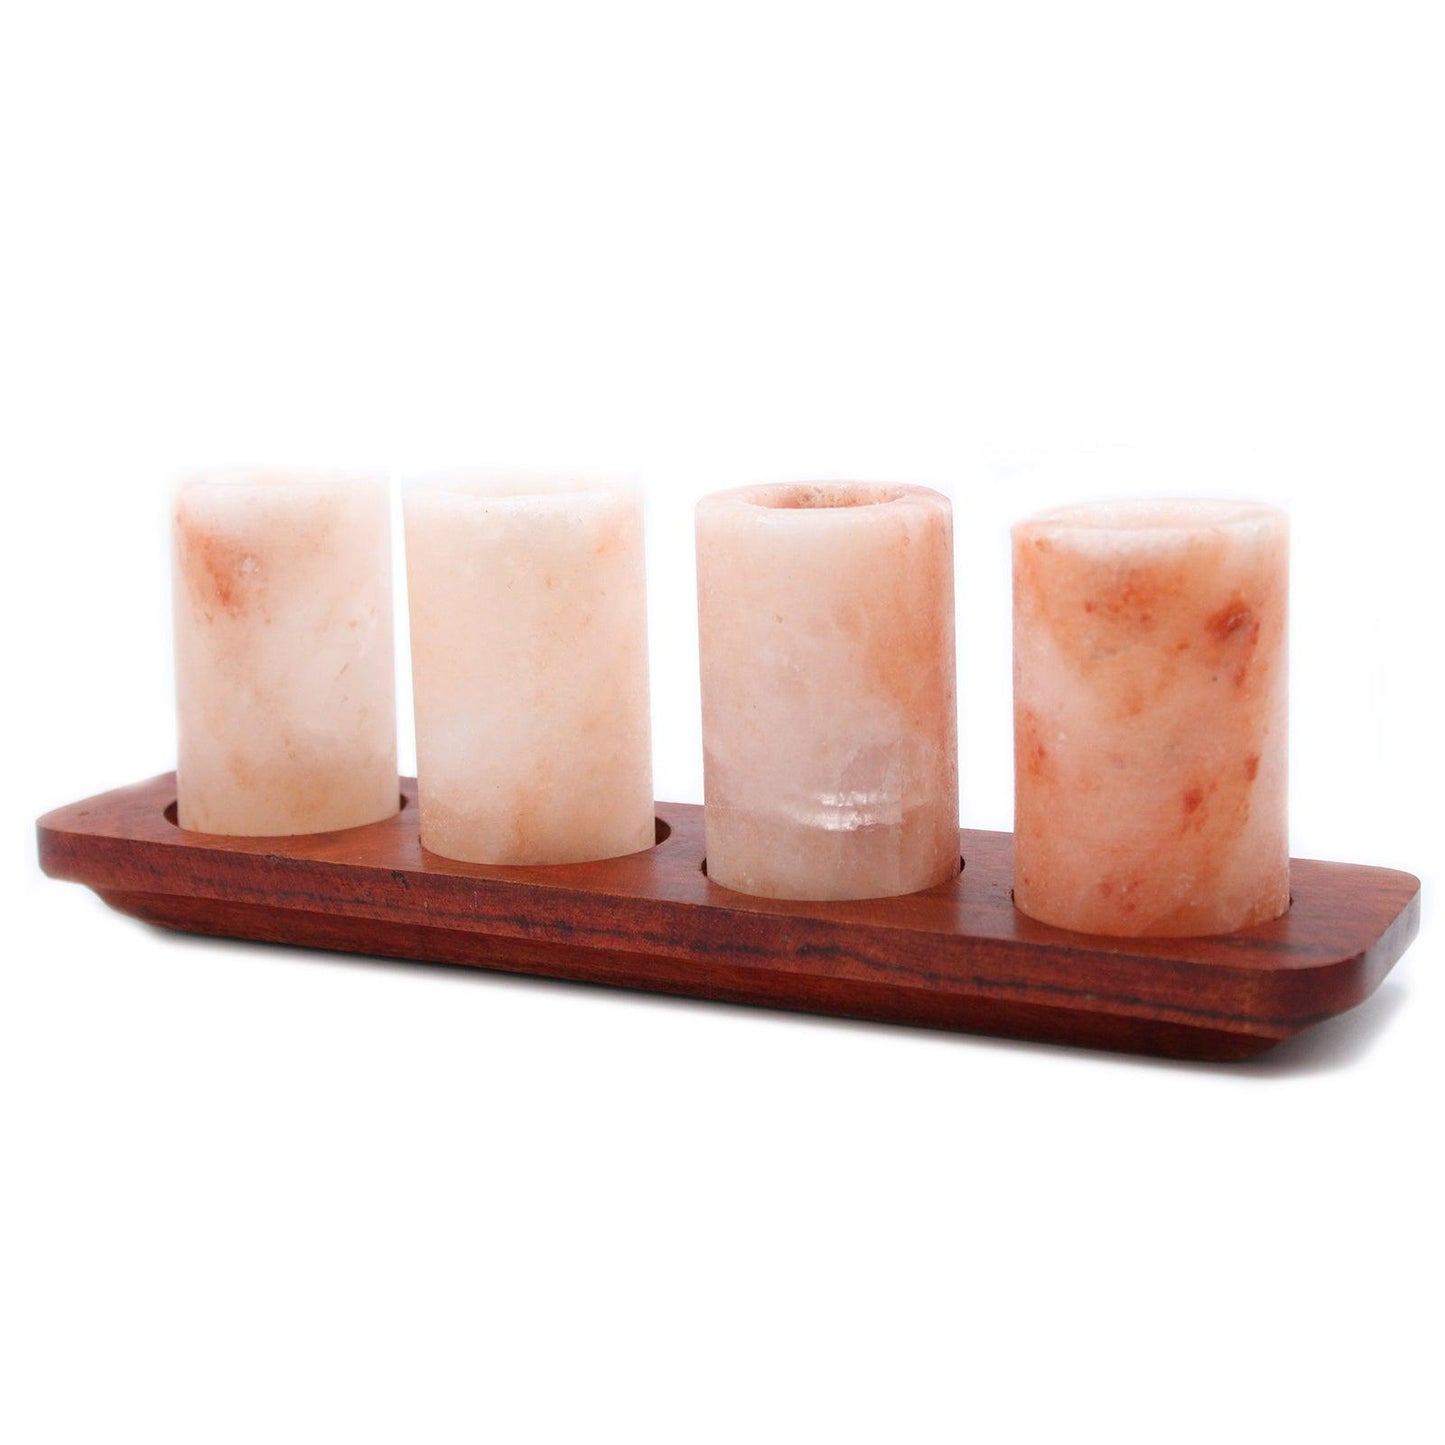 Set of 4 Himalayan Salt Shot Glasses & Wood Serving Stand - DuvetDay.co.uk